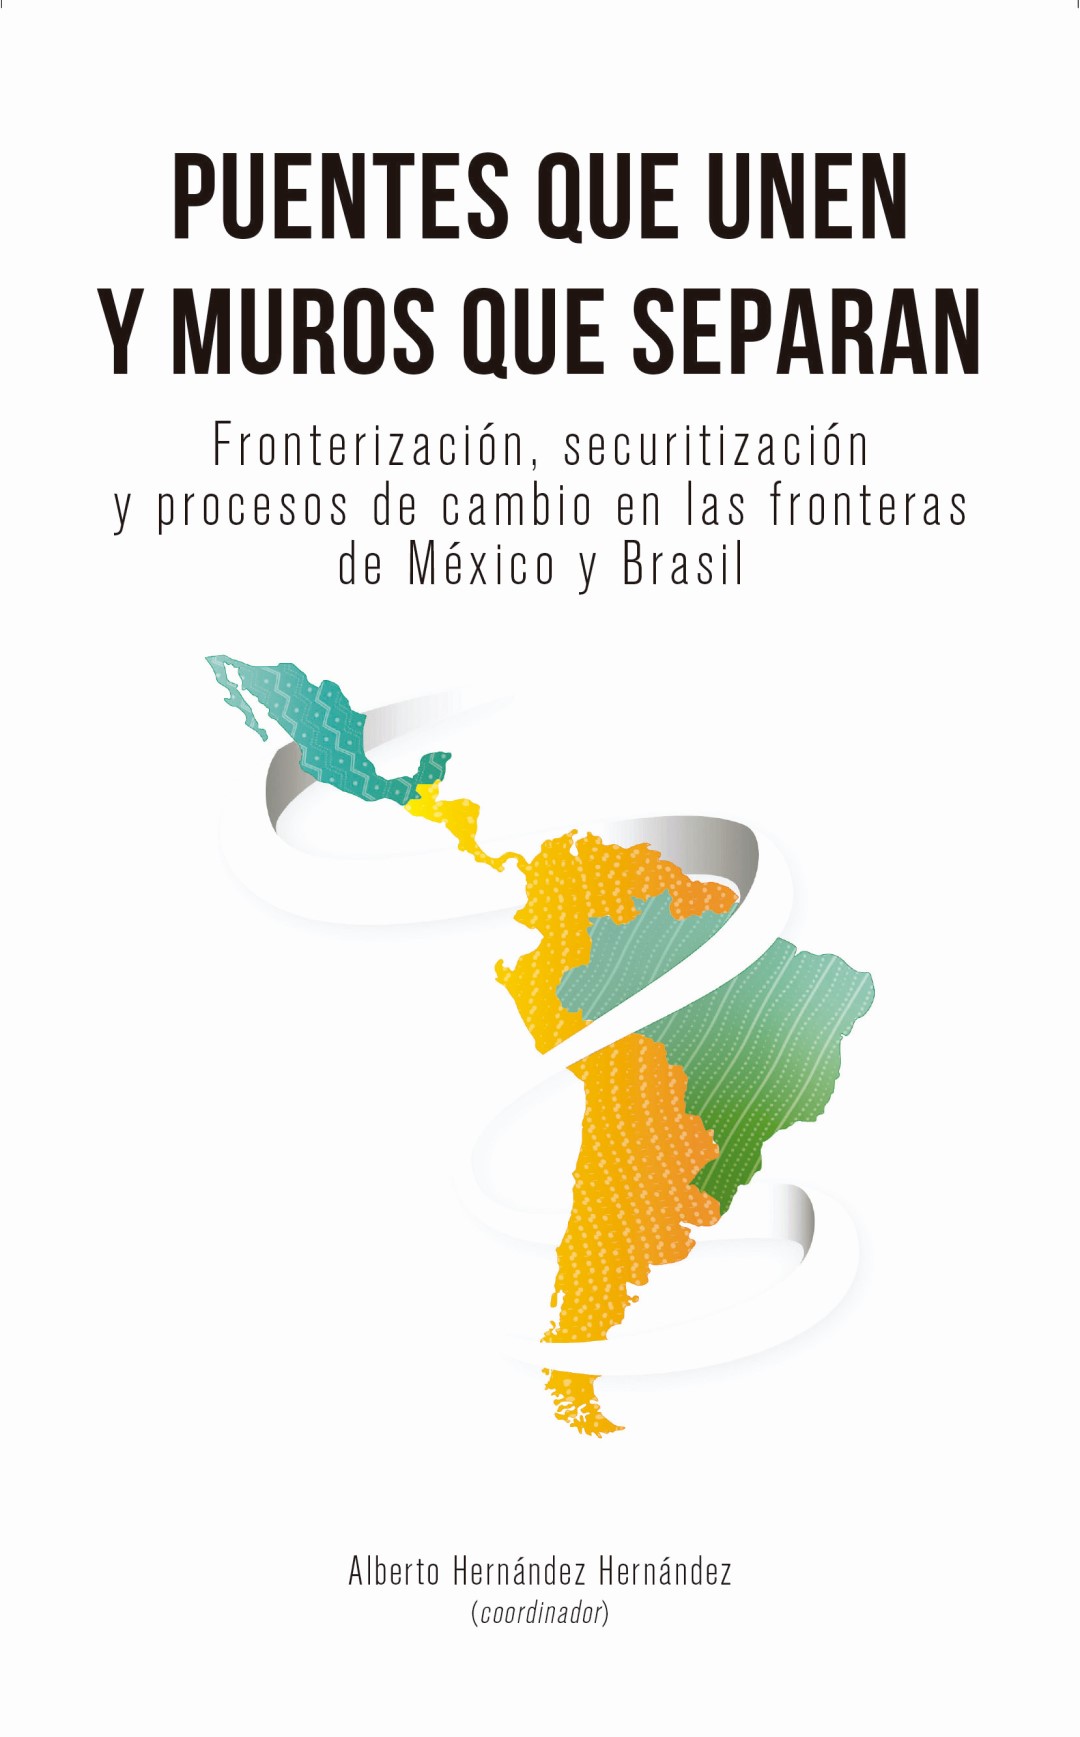 Puentes que unen y muros que separan. Fronterización, securitización y procesos de cambio en las fronteras de México y Brasil